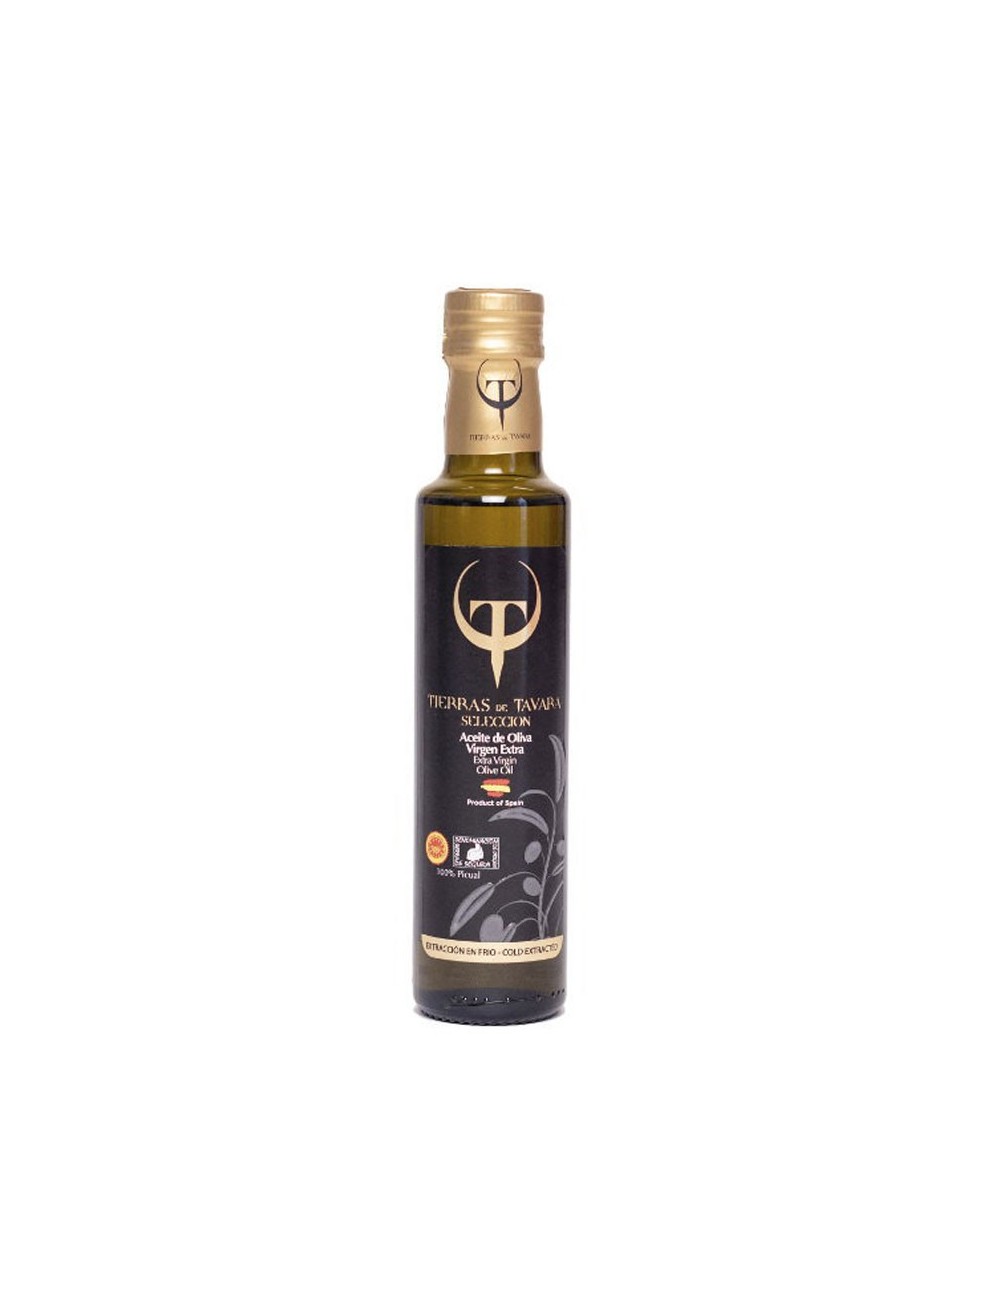 Tierras de Tavara Extra Virgin Olive Oil